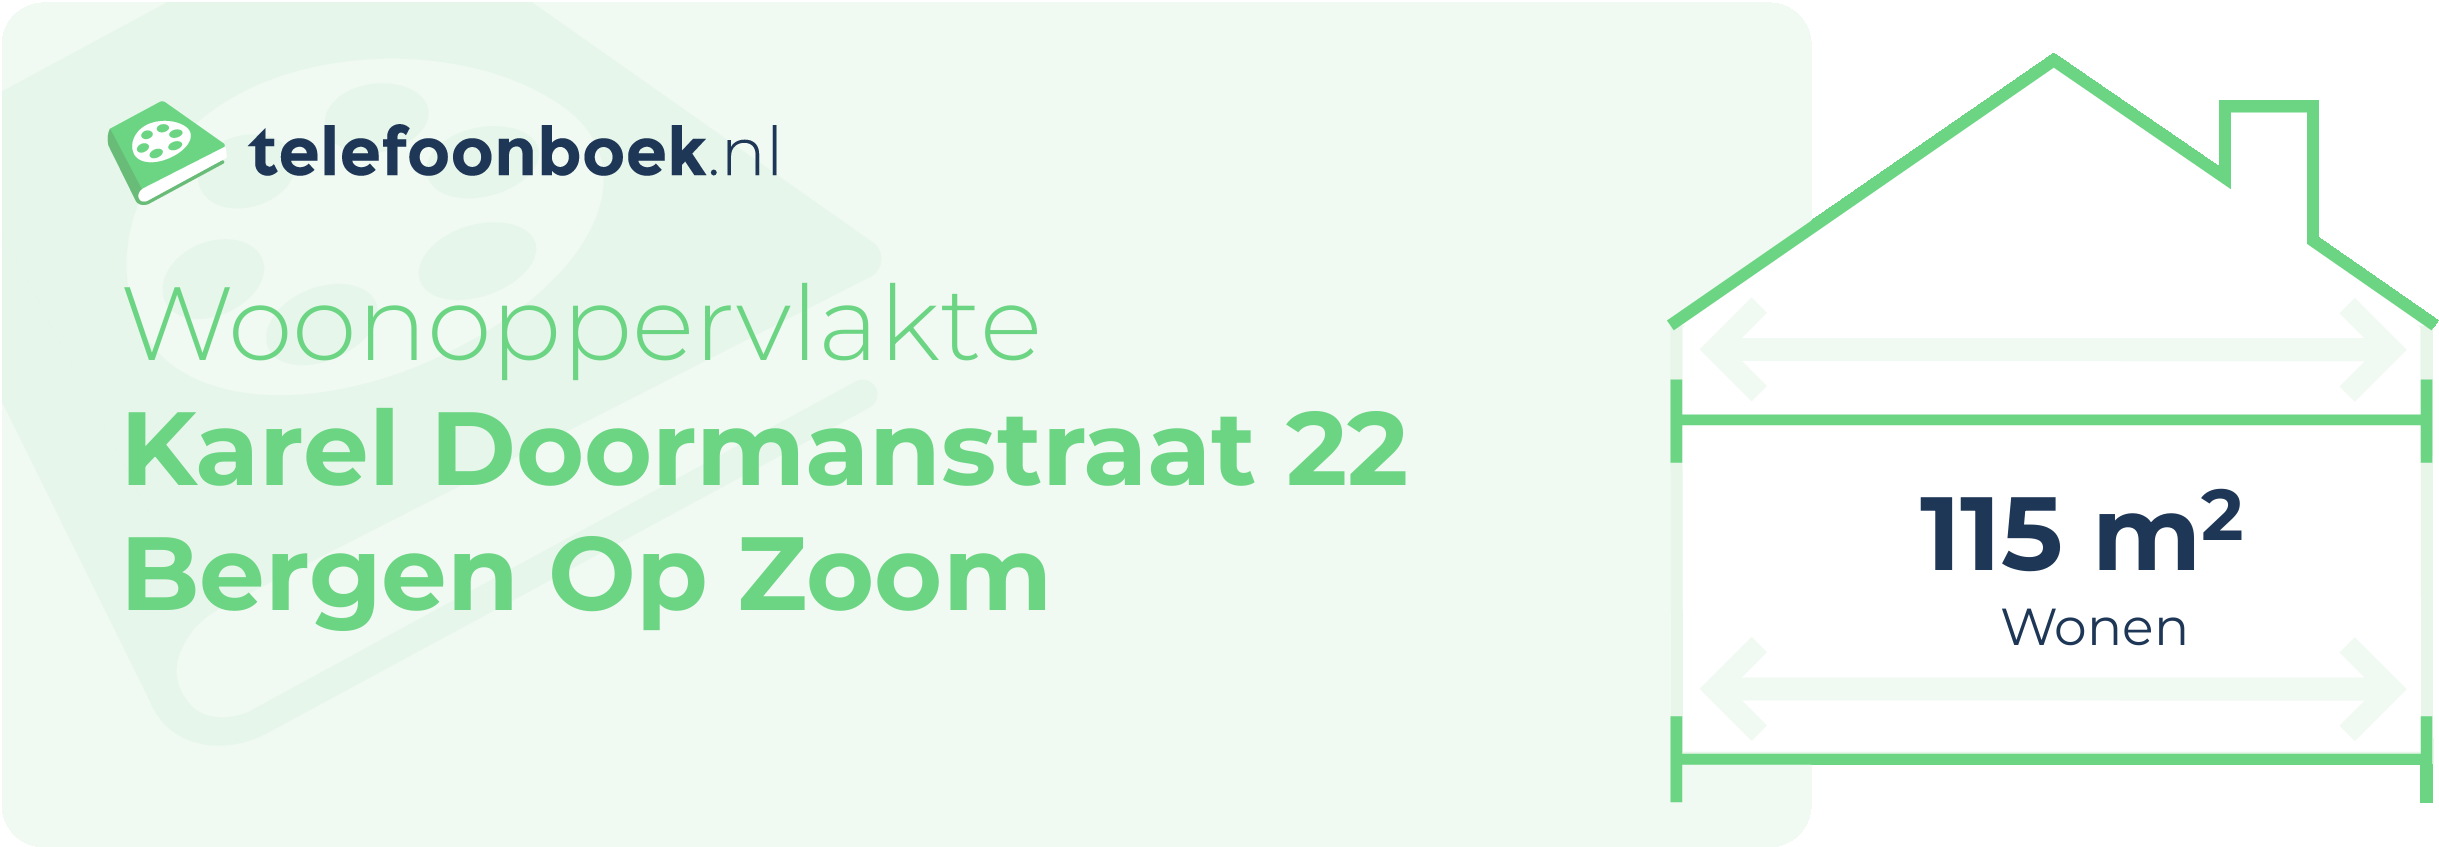 Woonoppervlakte Karel Doormanstraat 22 Bergen Op Zoom